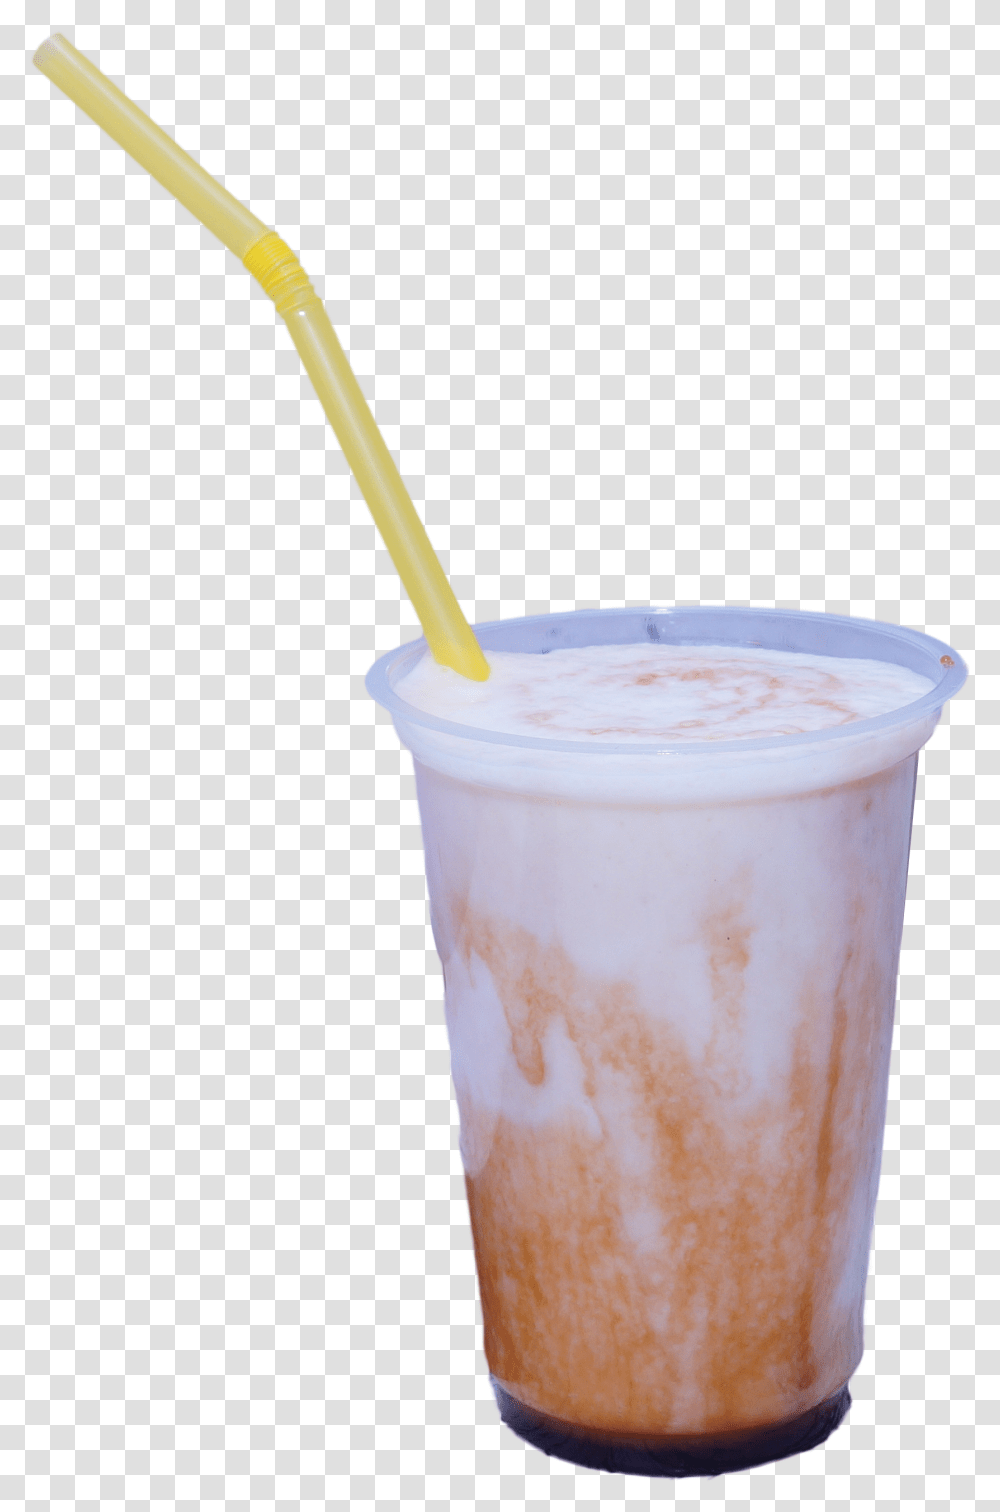 Cold Drink Shake Glass Milkshake, Beverage, Juice, Smoothie, Dessert Transparent Png